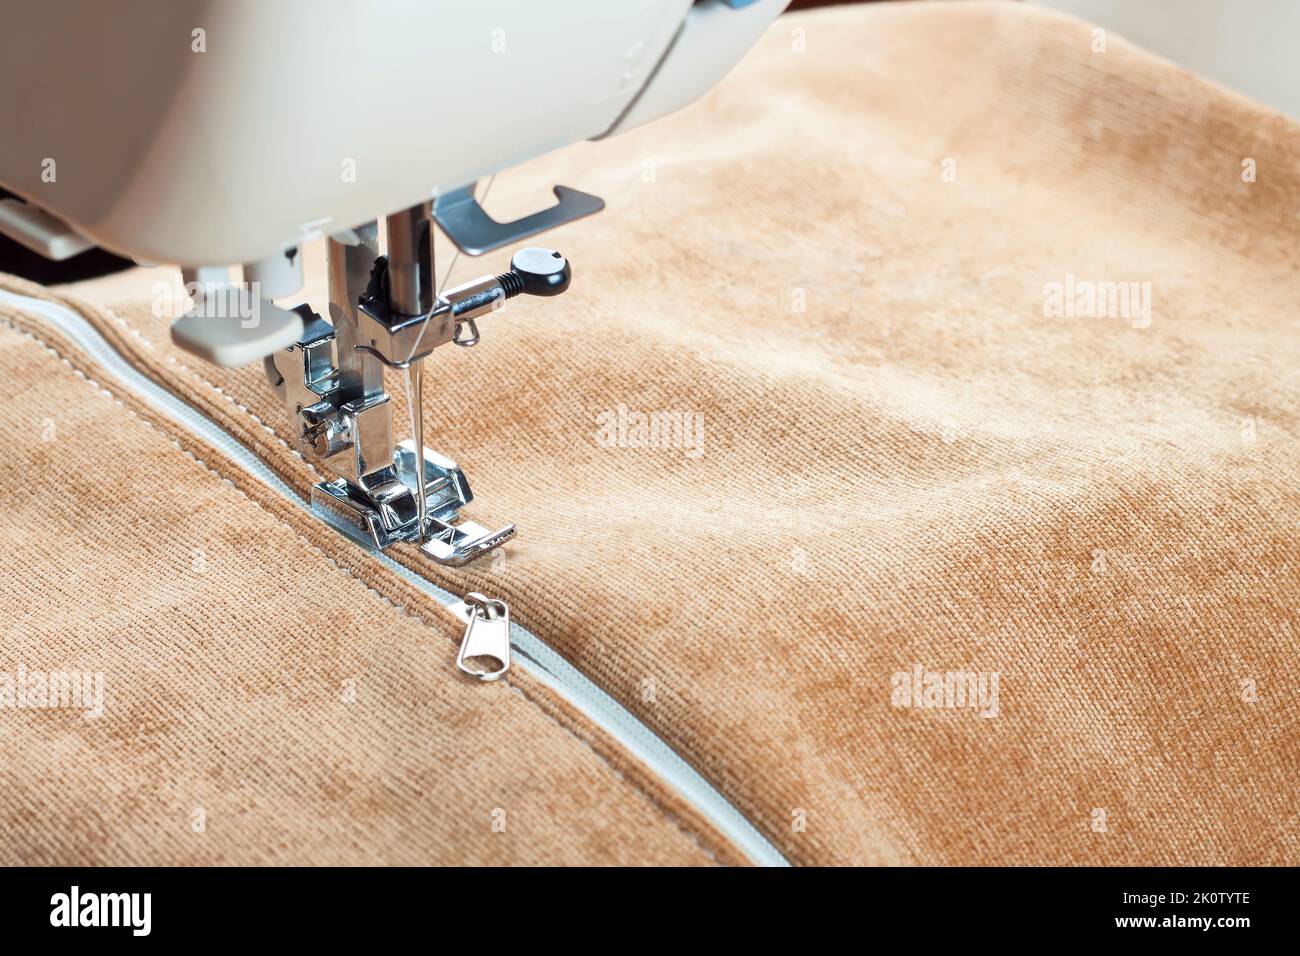 coudre une fermeture éclair blanche sur une machine à coudre. processus de couture Banque D'Images